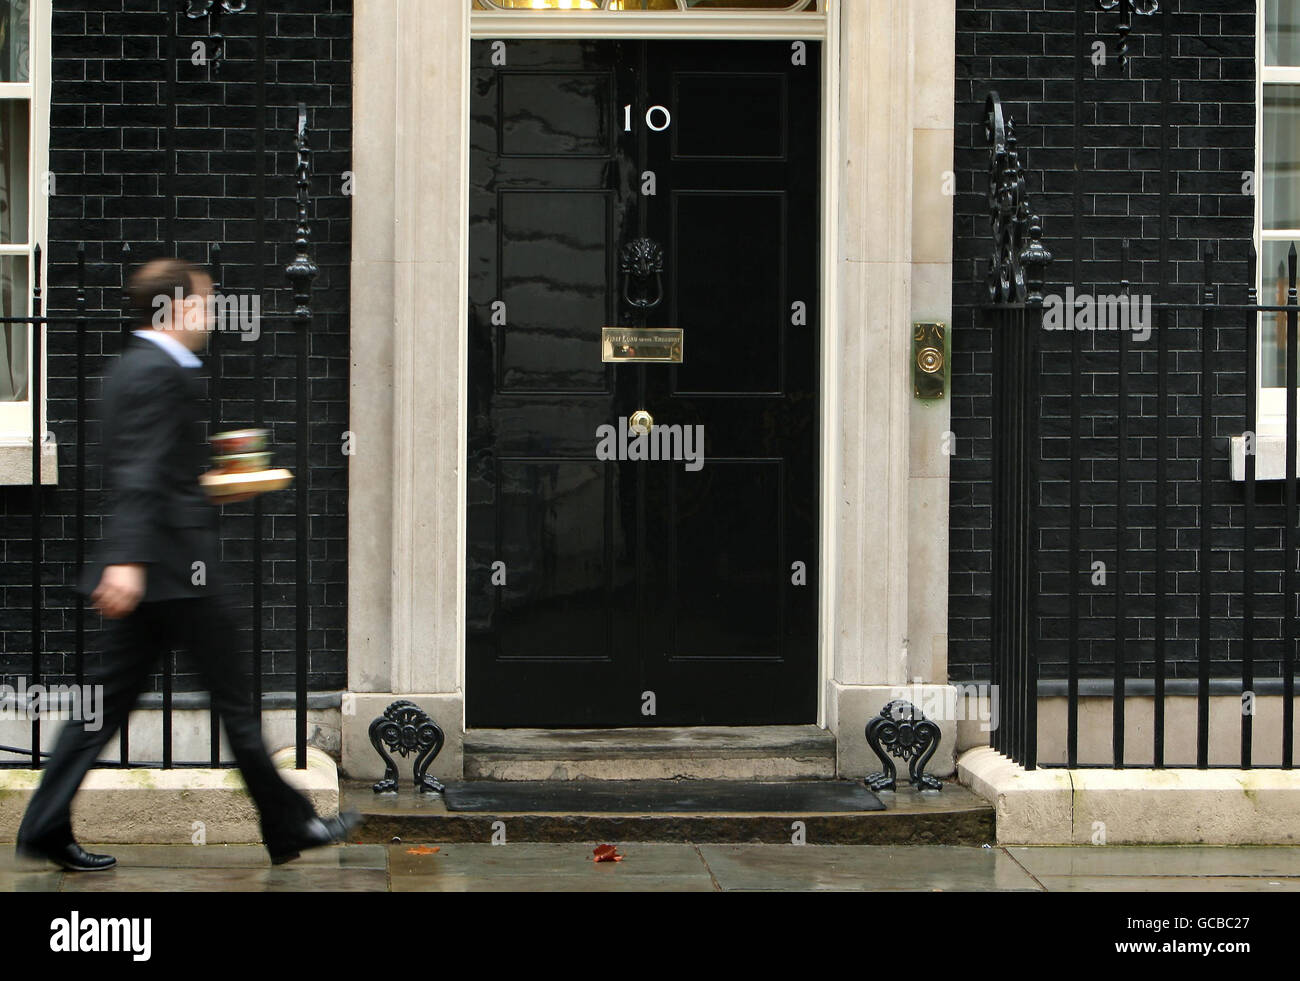 Ein Mann außerhalb der Downing Street 10 in London, wie der konservative Führer David Cameron und sein liberal-demokratischer Amtskollege Nick Clegg heute in der Downing Street 10 aufgefordert haben, sich mit den Vorwürfen der Mobbing von Mitarbeitern zu befassen. Stockfoto